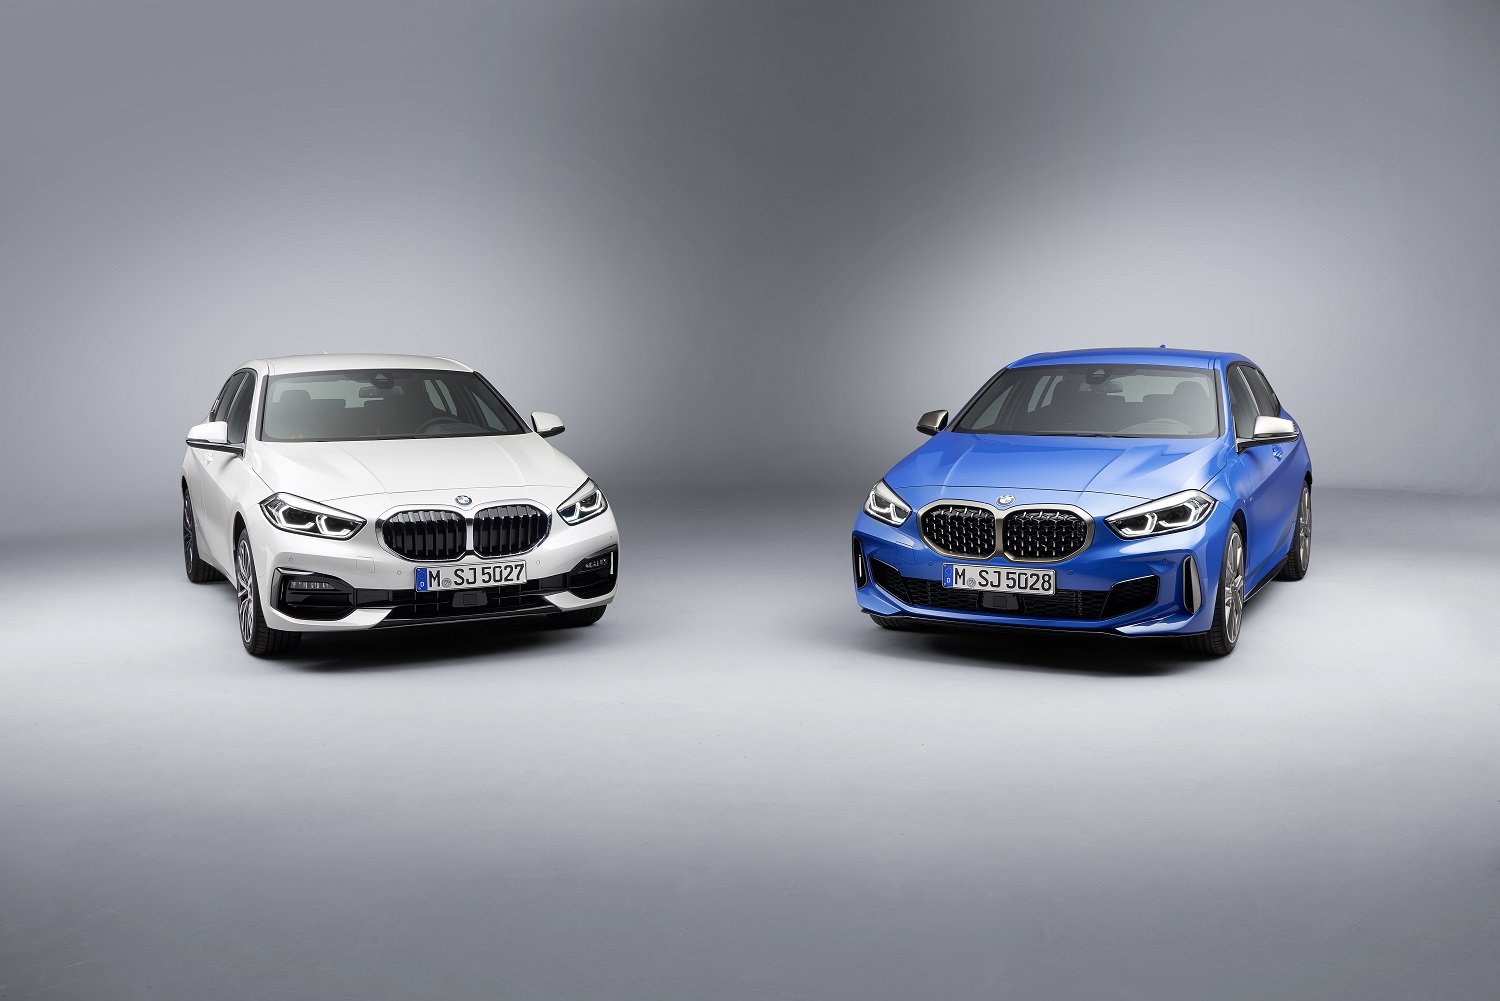 Nová generace BMW řady 1